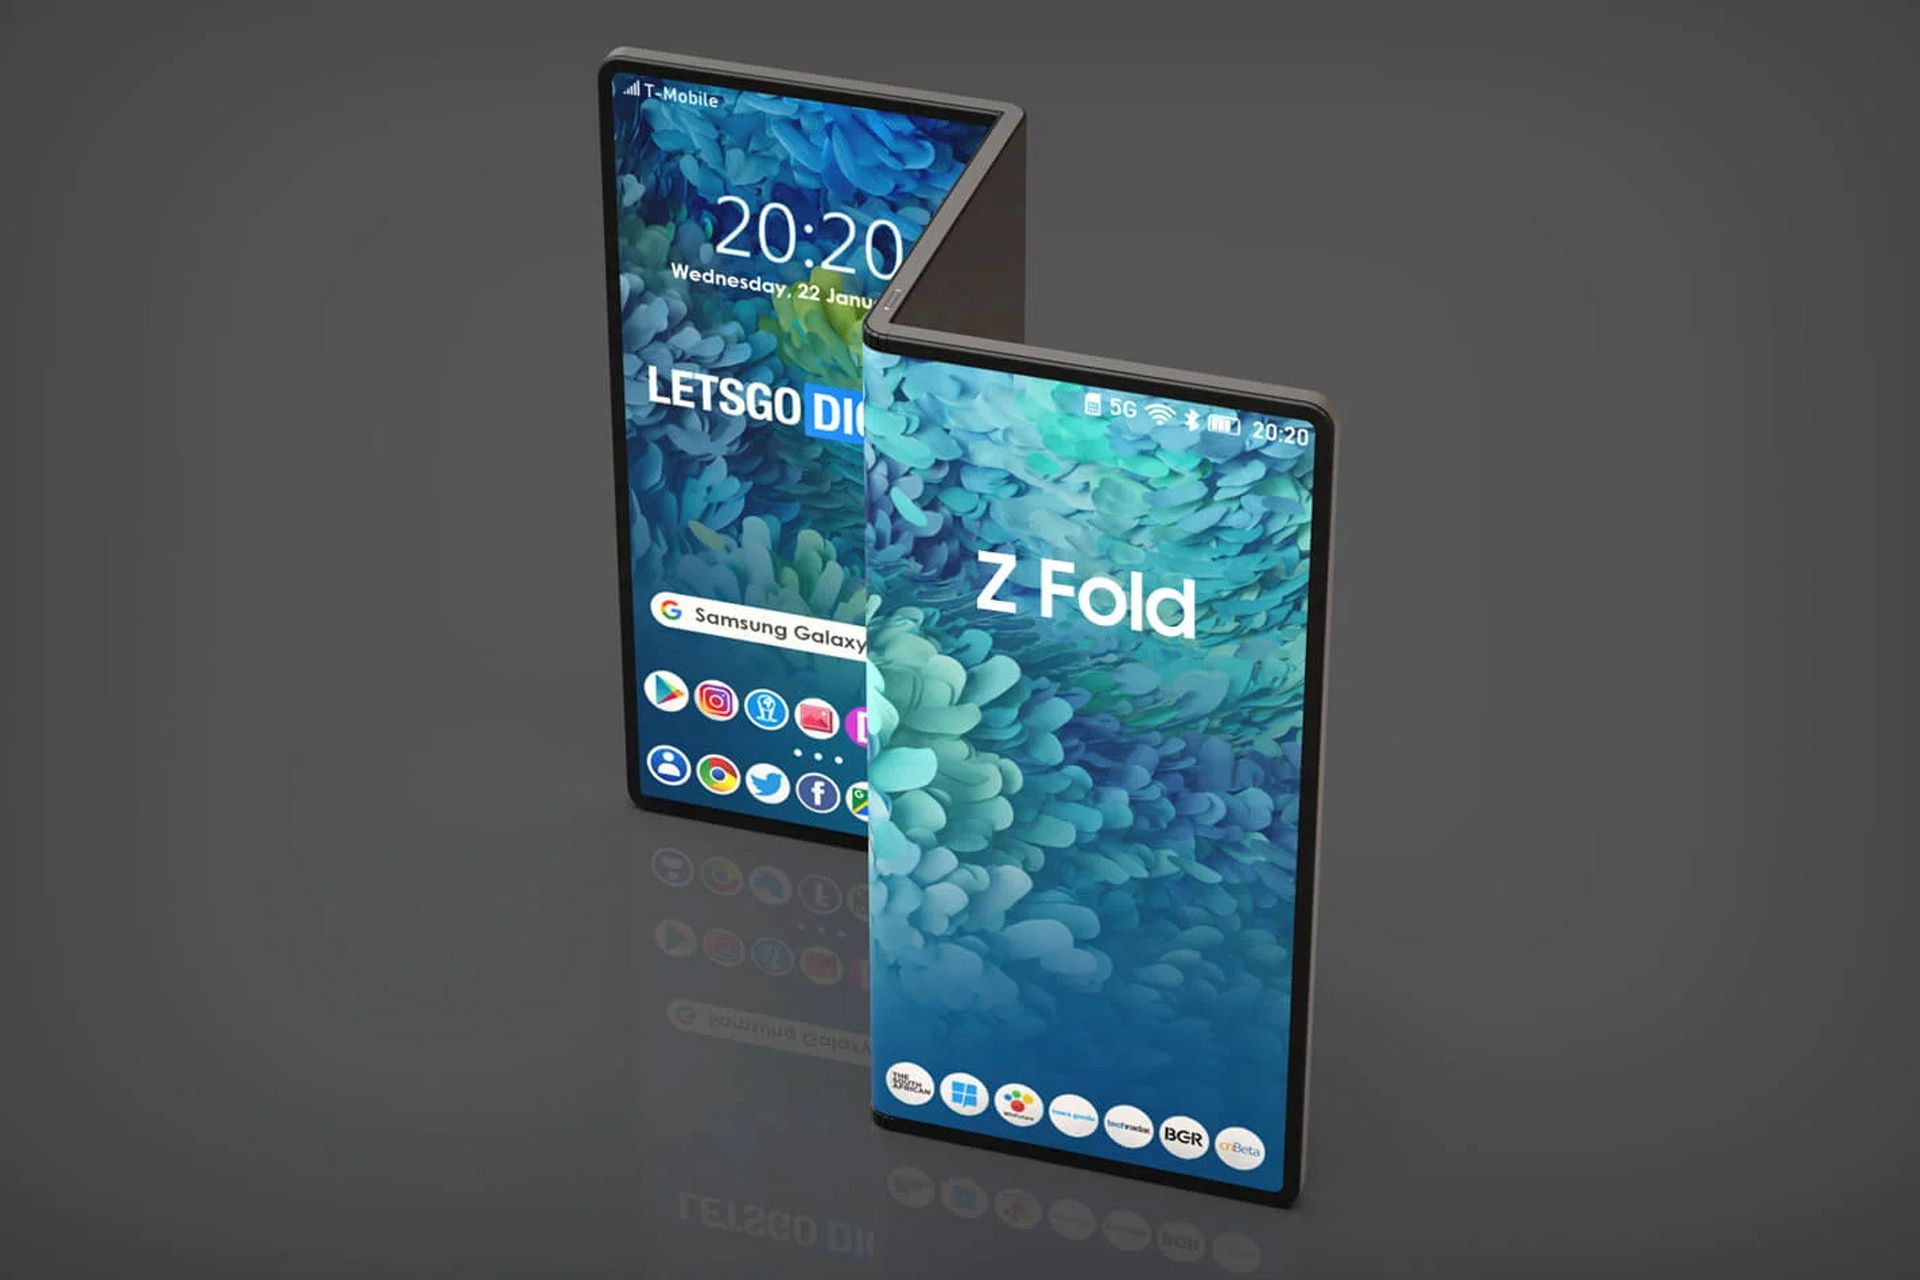 مرجع متخصصين ايران فرم Z تبلت گلكسي زد فولد / Galaxy Z Fold سامسونگ رندر غيررسمي